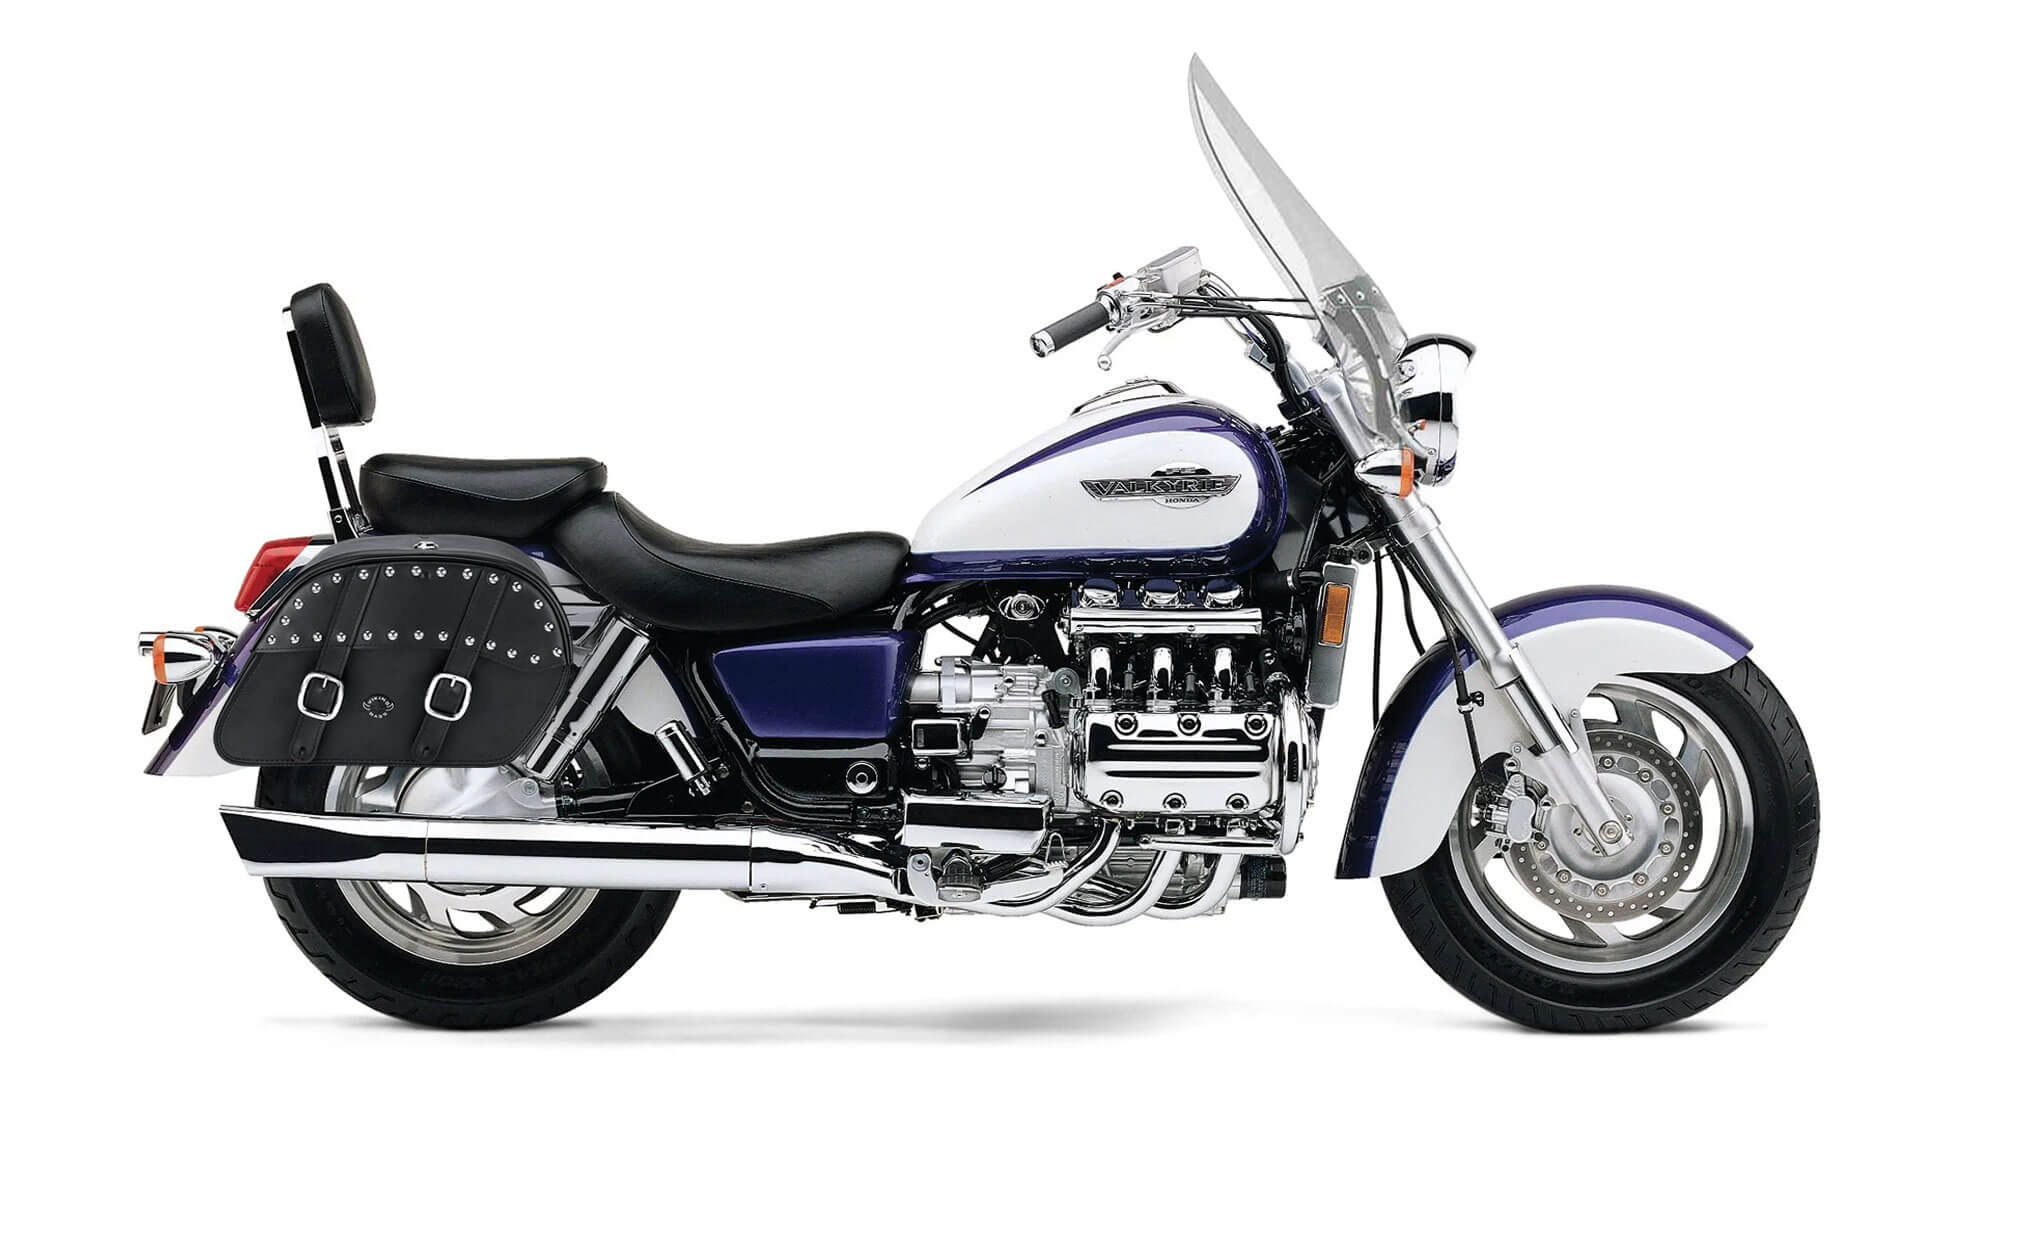 Viking Skarner Large Honda Valkyrie 1500 Tourer Leather Studded Motorcycle Saddlebags on Bike Photo @expand